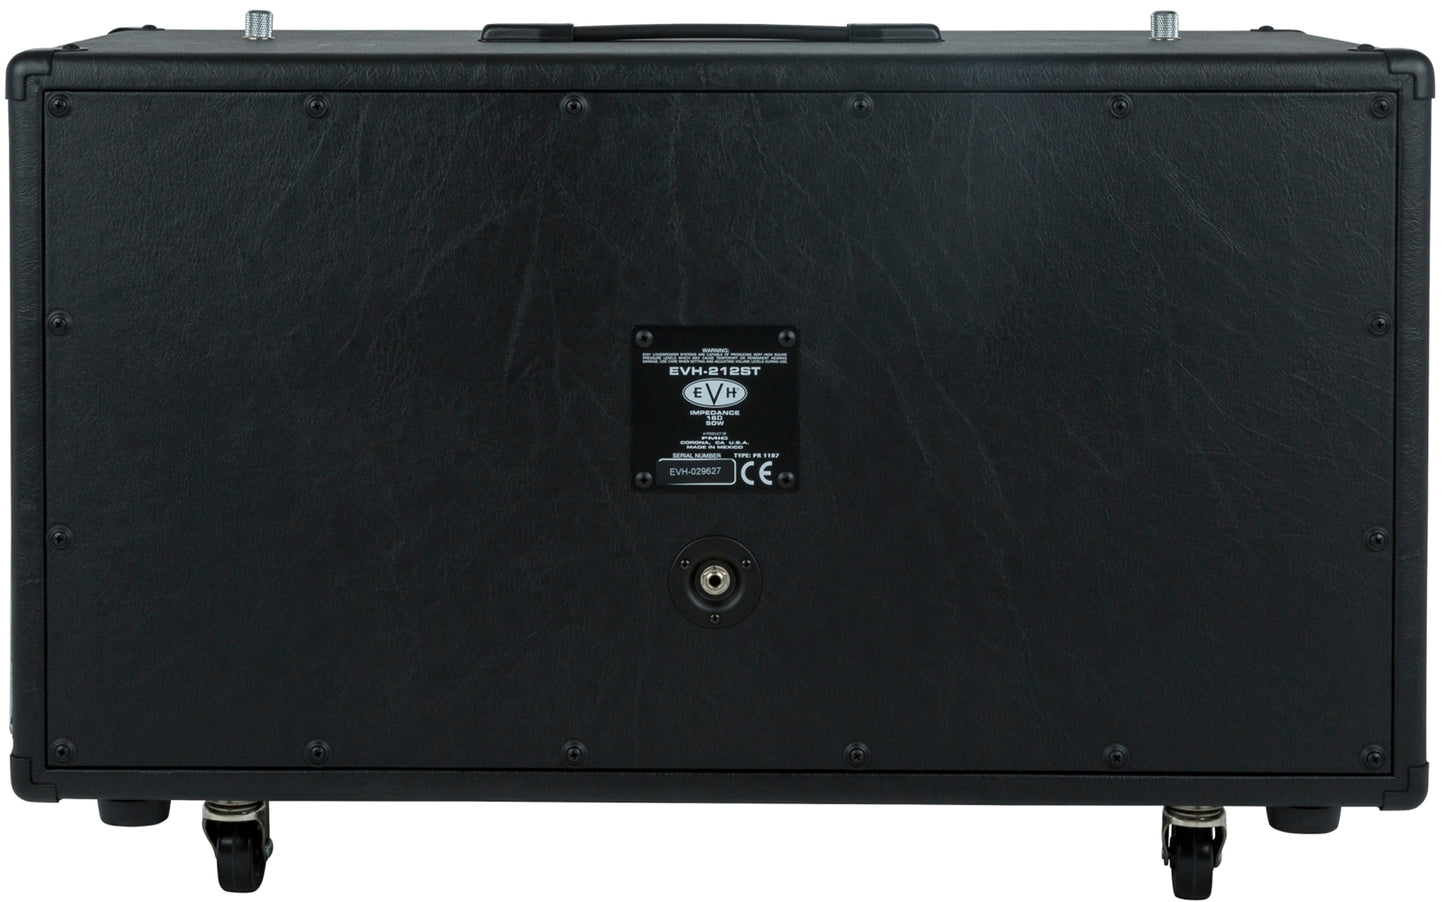 EVH 5150III® EL34 212ST 50W 2x12 Guitar Speaker Cabinet Black